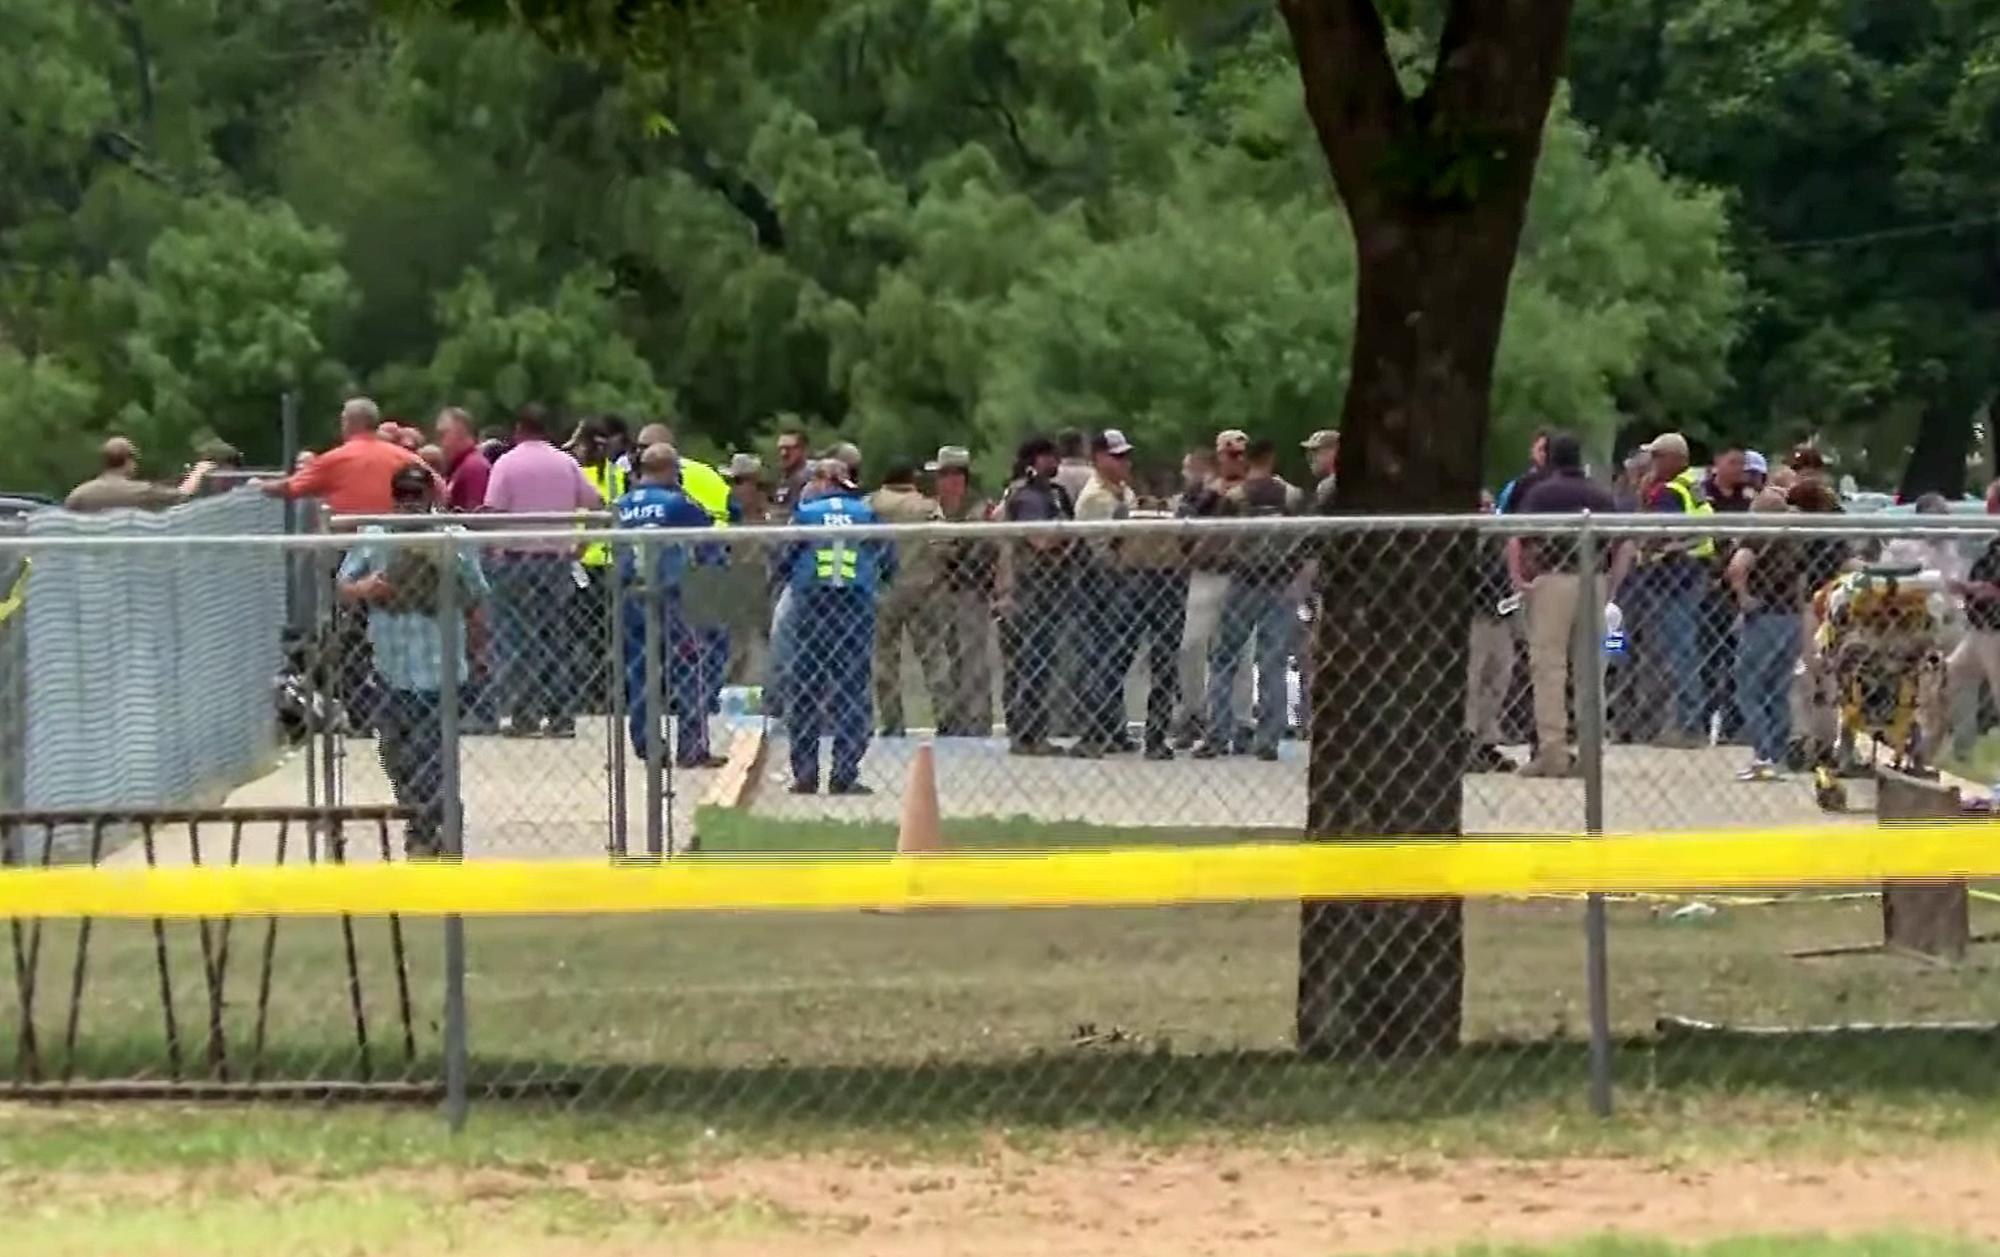 Masacre en una escuela de Texas